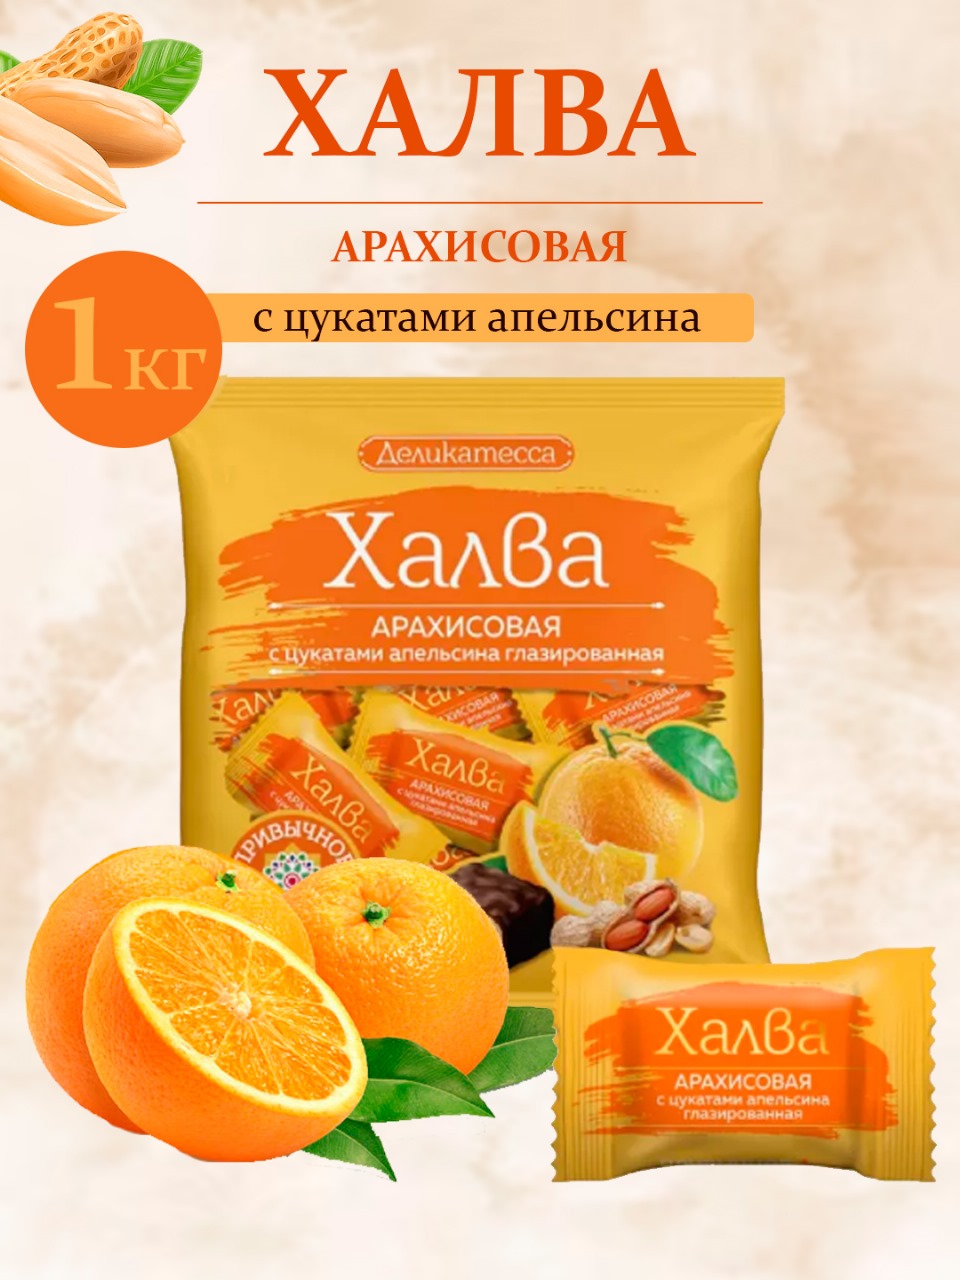 Халва конфеты Деликатесса Арахисовая с цукатами апельсина, 1 кг